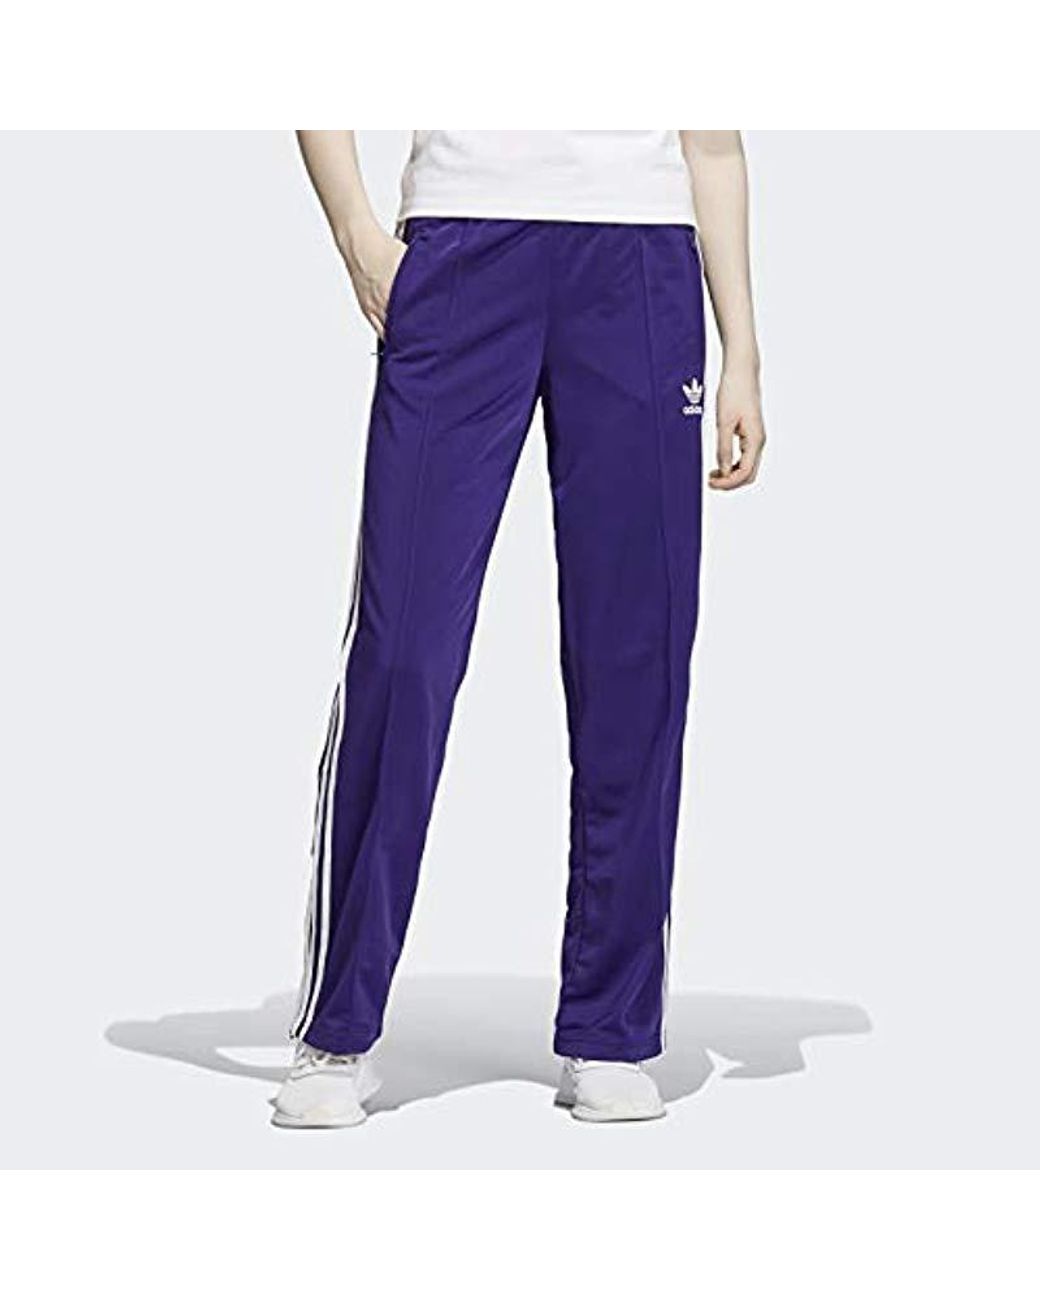 navigatie Verschuiving in stand houden adidas Originals Firebird Mid-rise Track Pants in Purple | Lyst